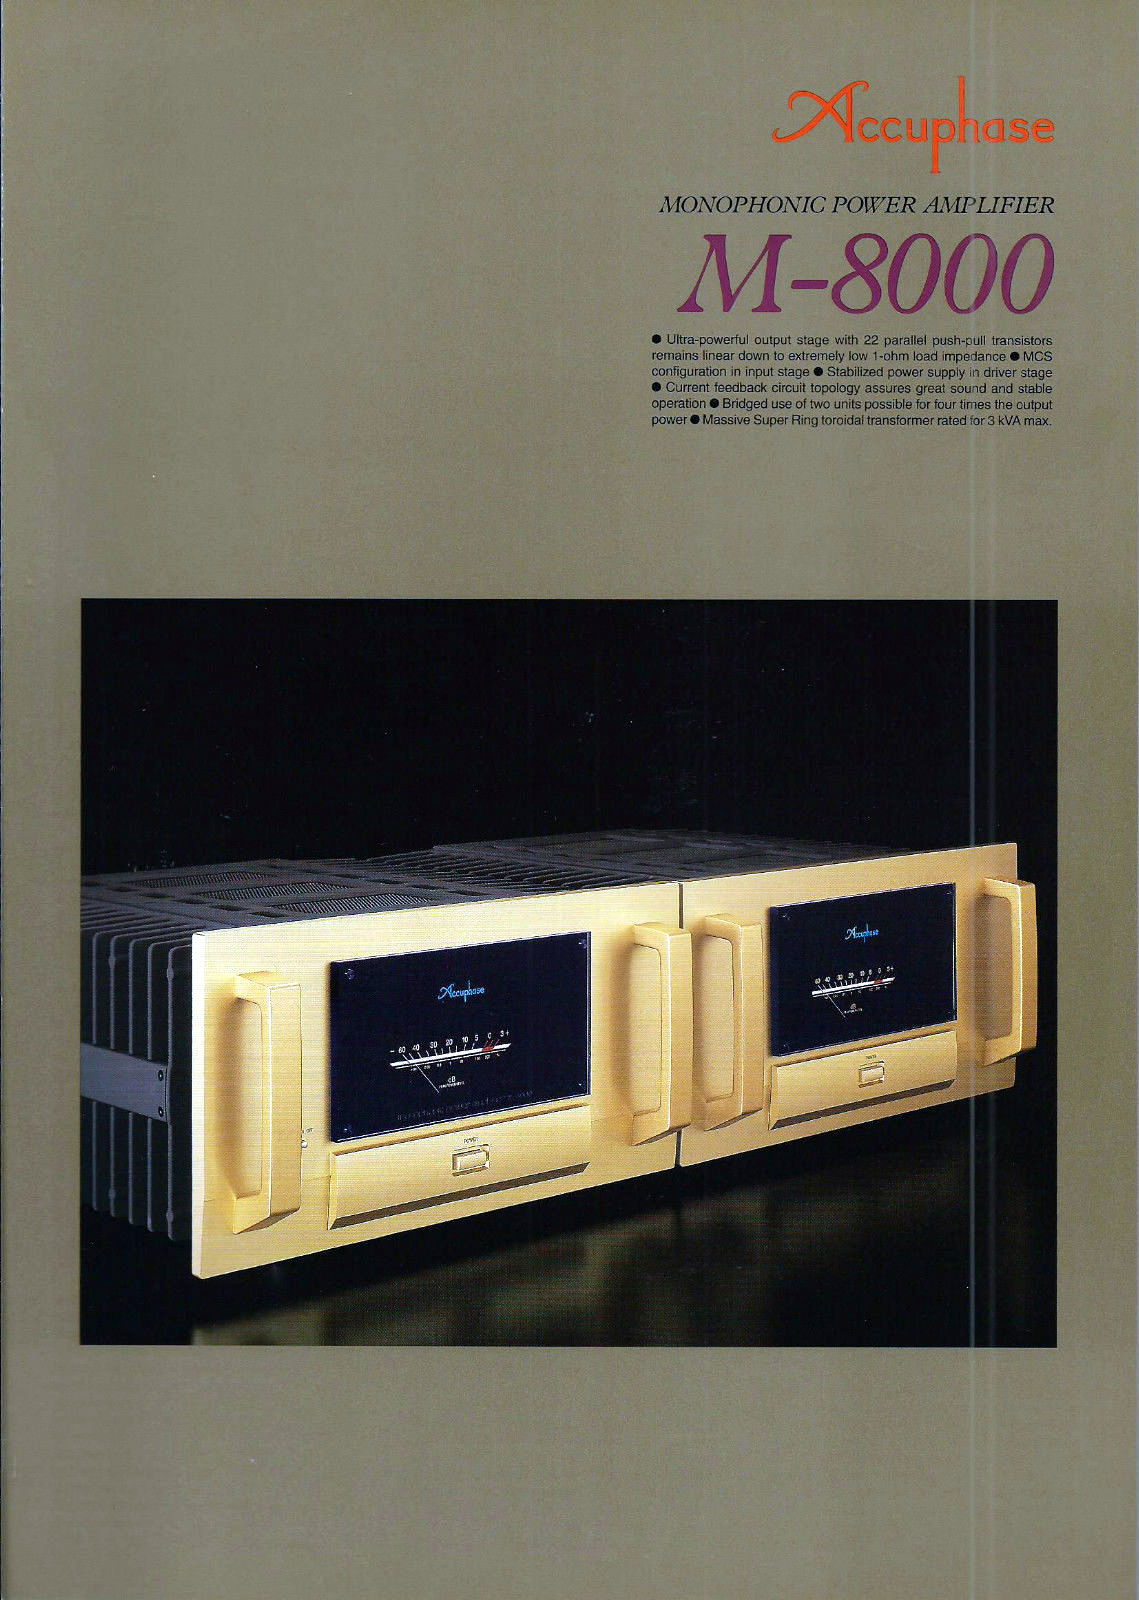 Accuphase M-8000-Prospekt-1.jpg